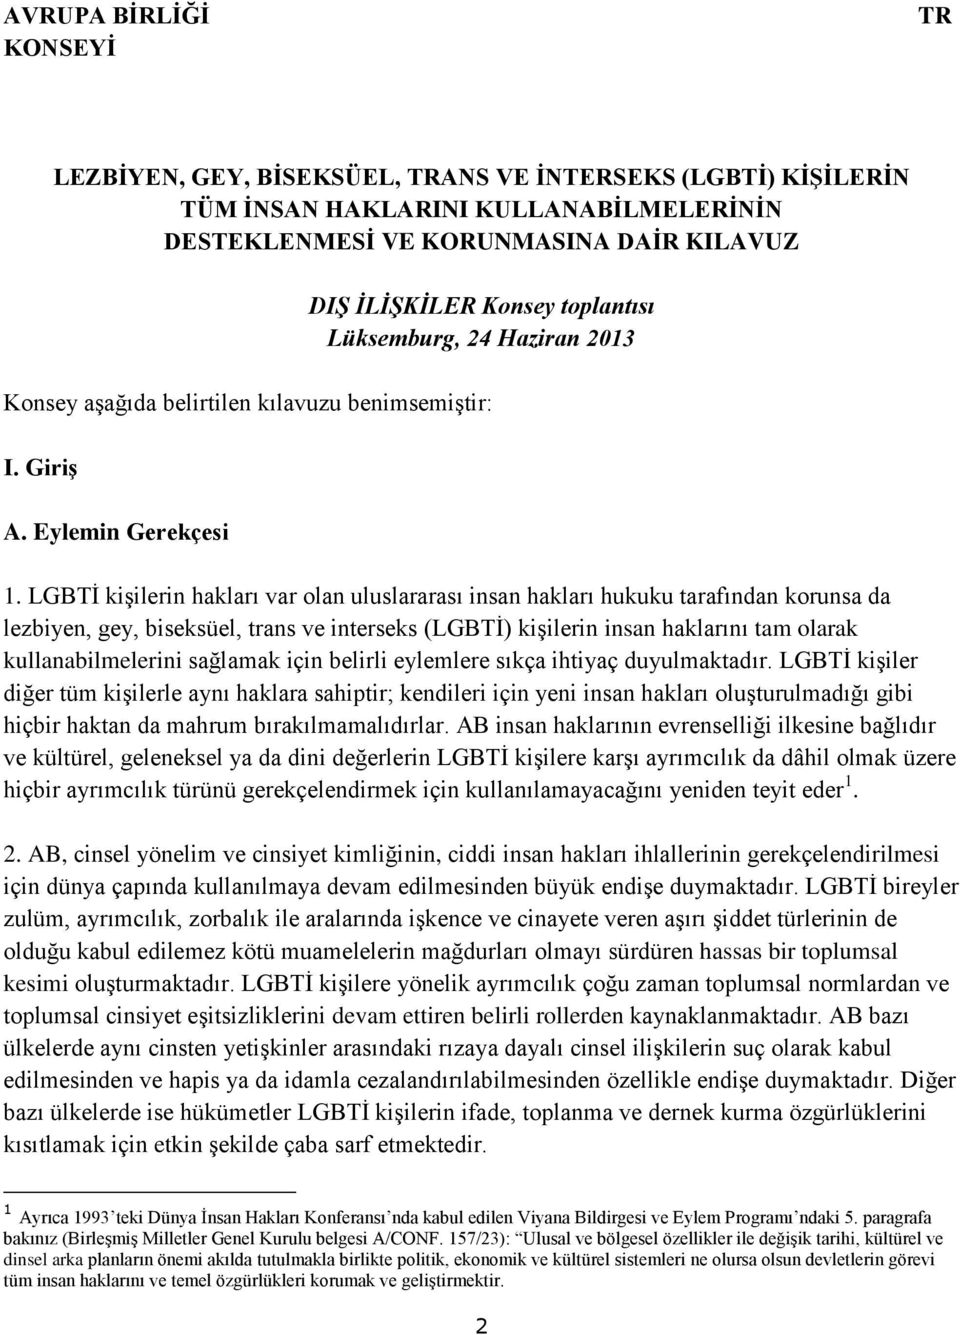 LGBTİ kişilerin hakları var olan uluslararası insan hakları hukuku tarafından korunsa da lezbiyen, gey, biseksüel, trans ve interseks (LGBTİ) kişilerin insan haklarını tam olarak kullanabilmelerini